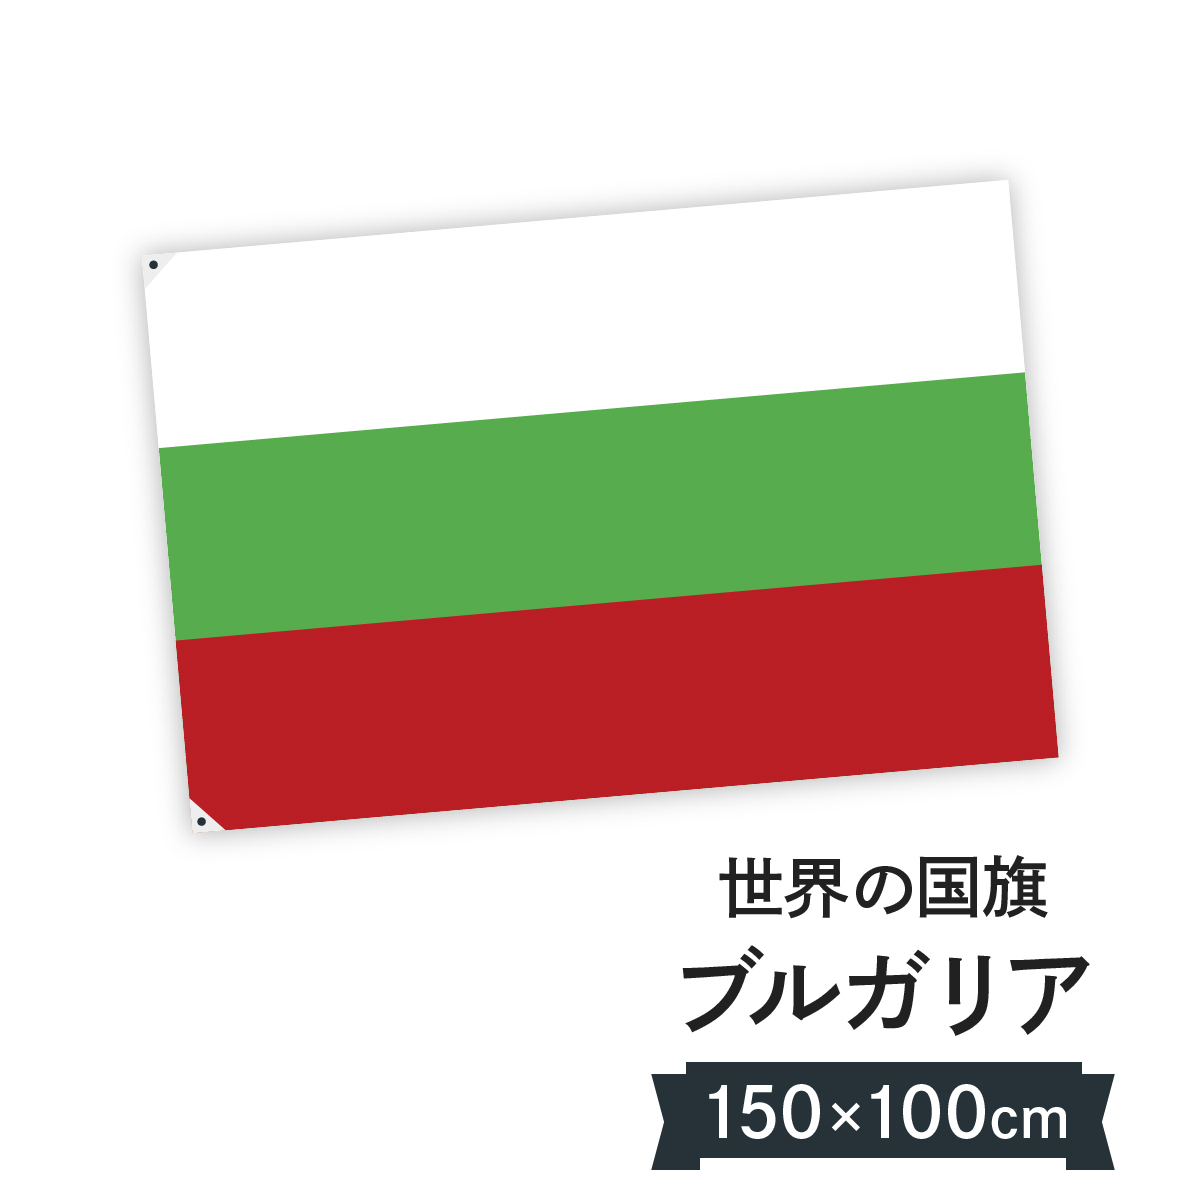 楽天市場 ブルガリア共和国 国旗 W150cm H100cm グッズプロ